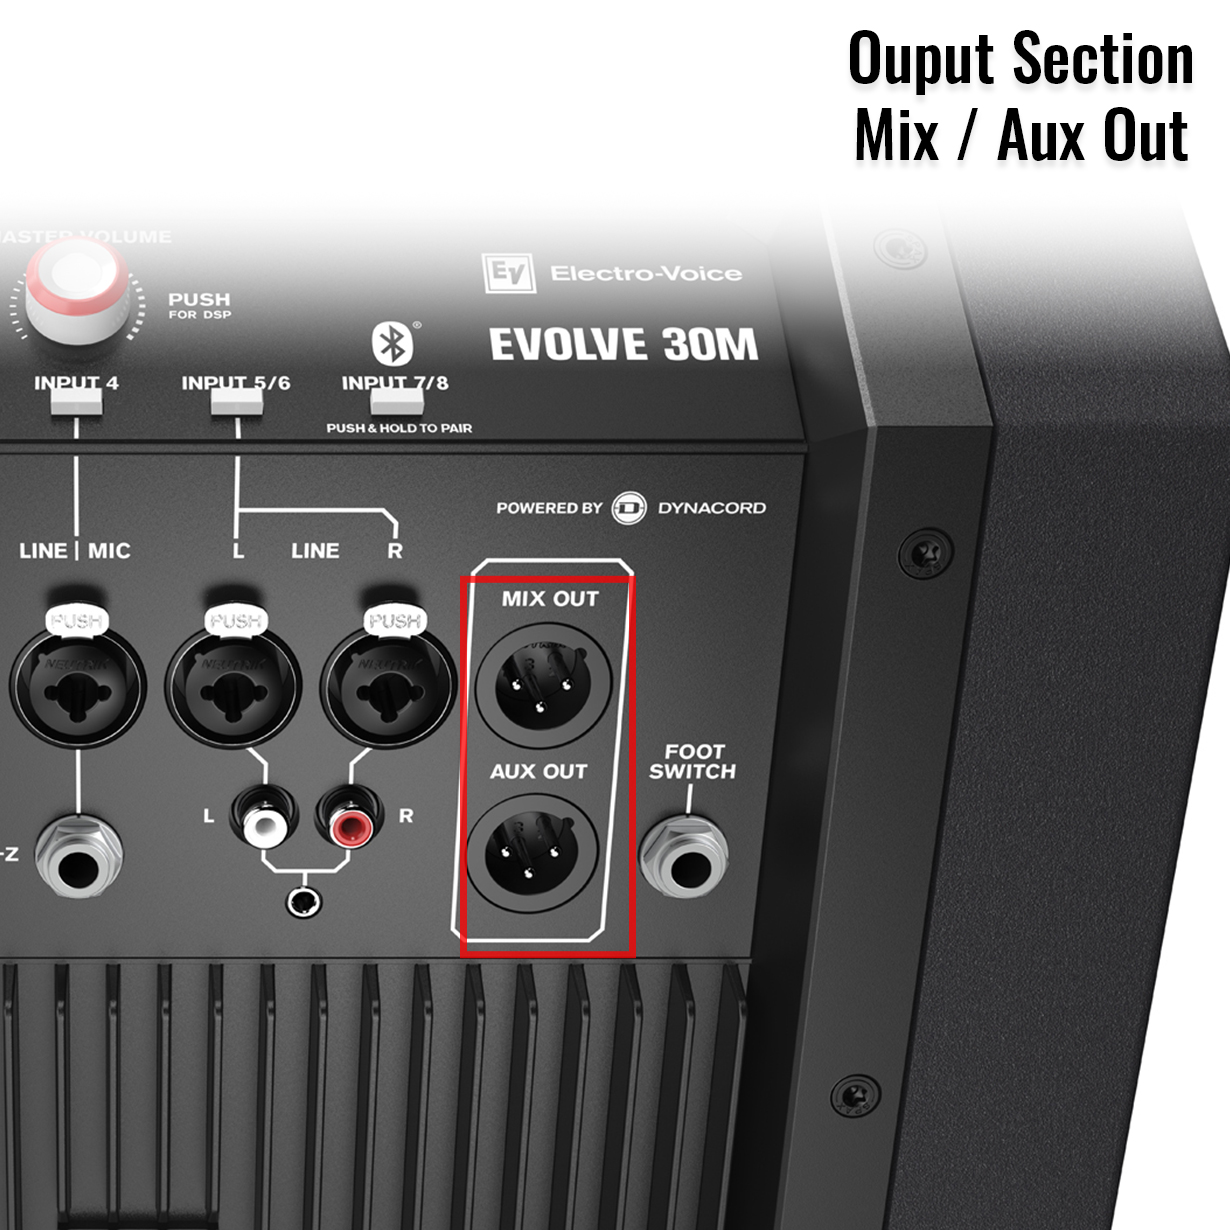 Electro-Voice Evolve 30M Mixer Mix Out & Aux Out